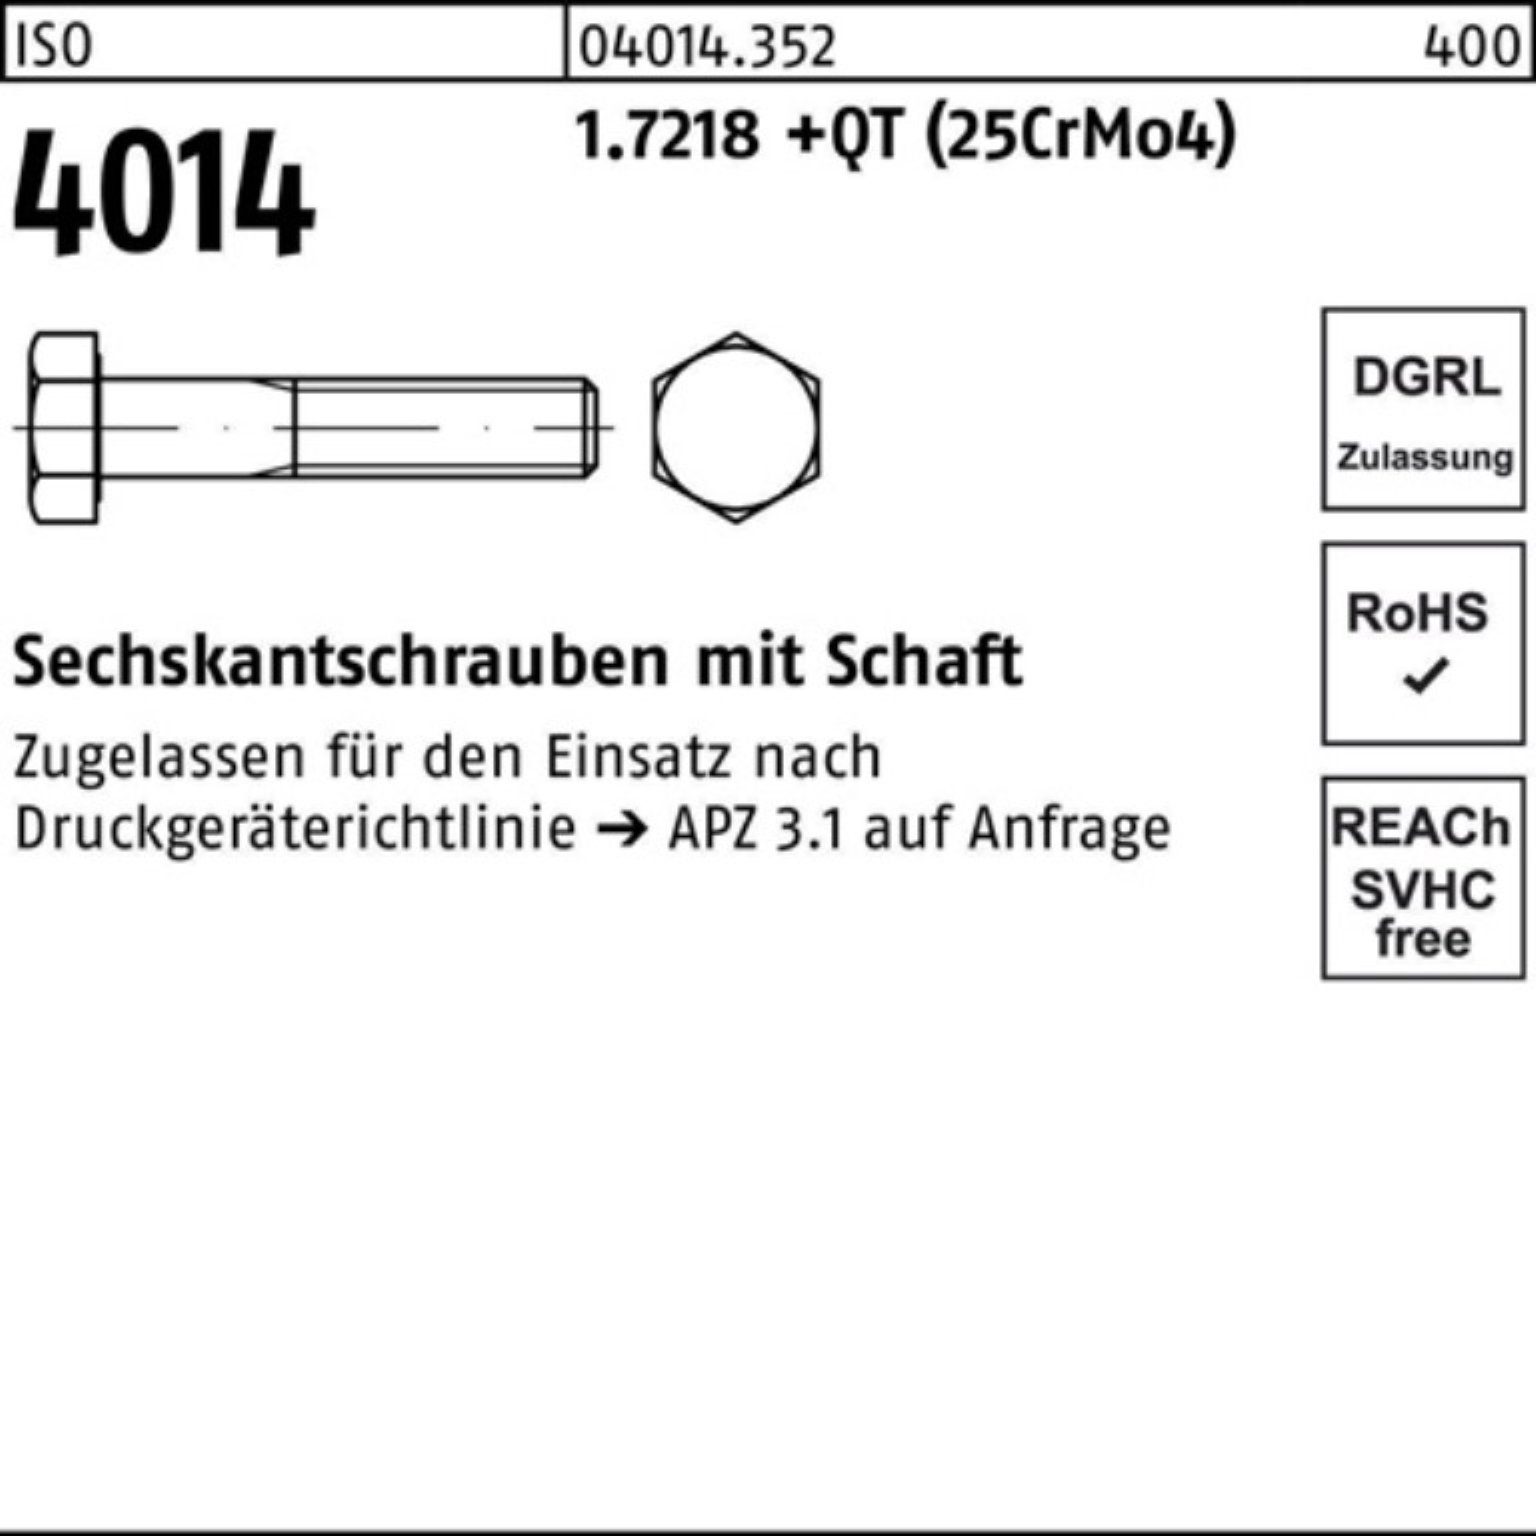 M20x Sechskantschraube ISO 240 4014 Sechskantschraube 1.7218 Pack Schaft (25Cr Bufab +QT 100er